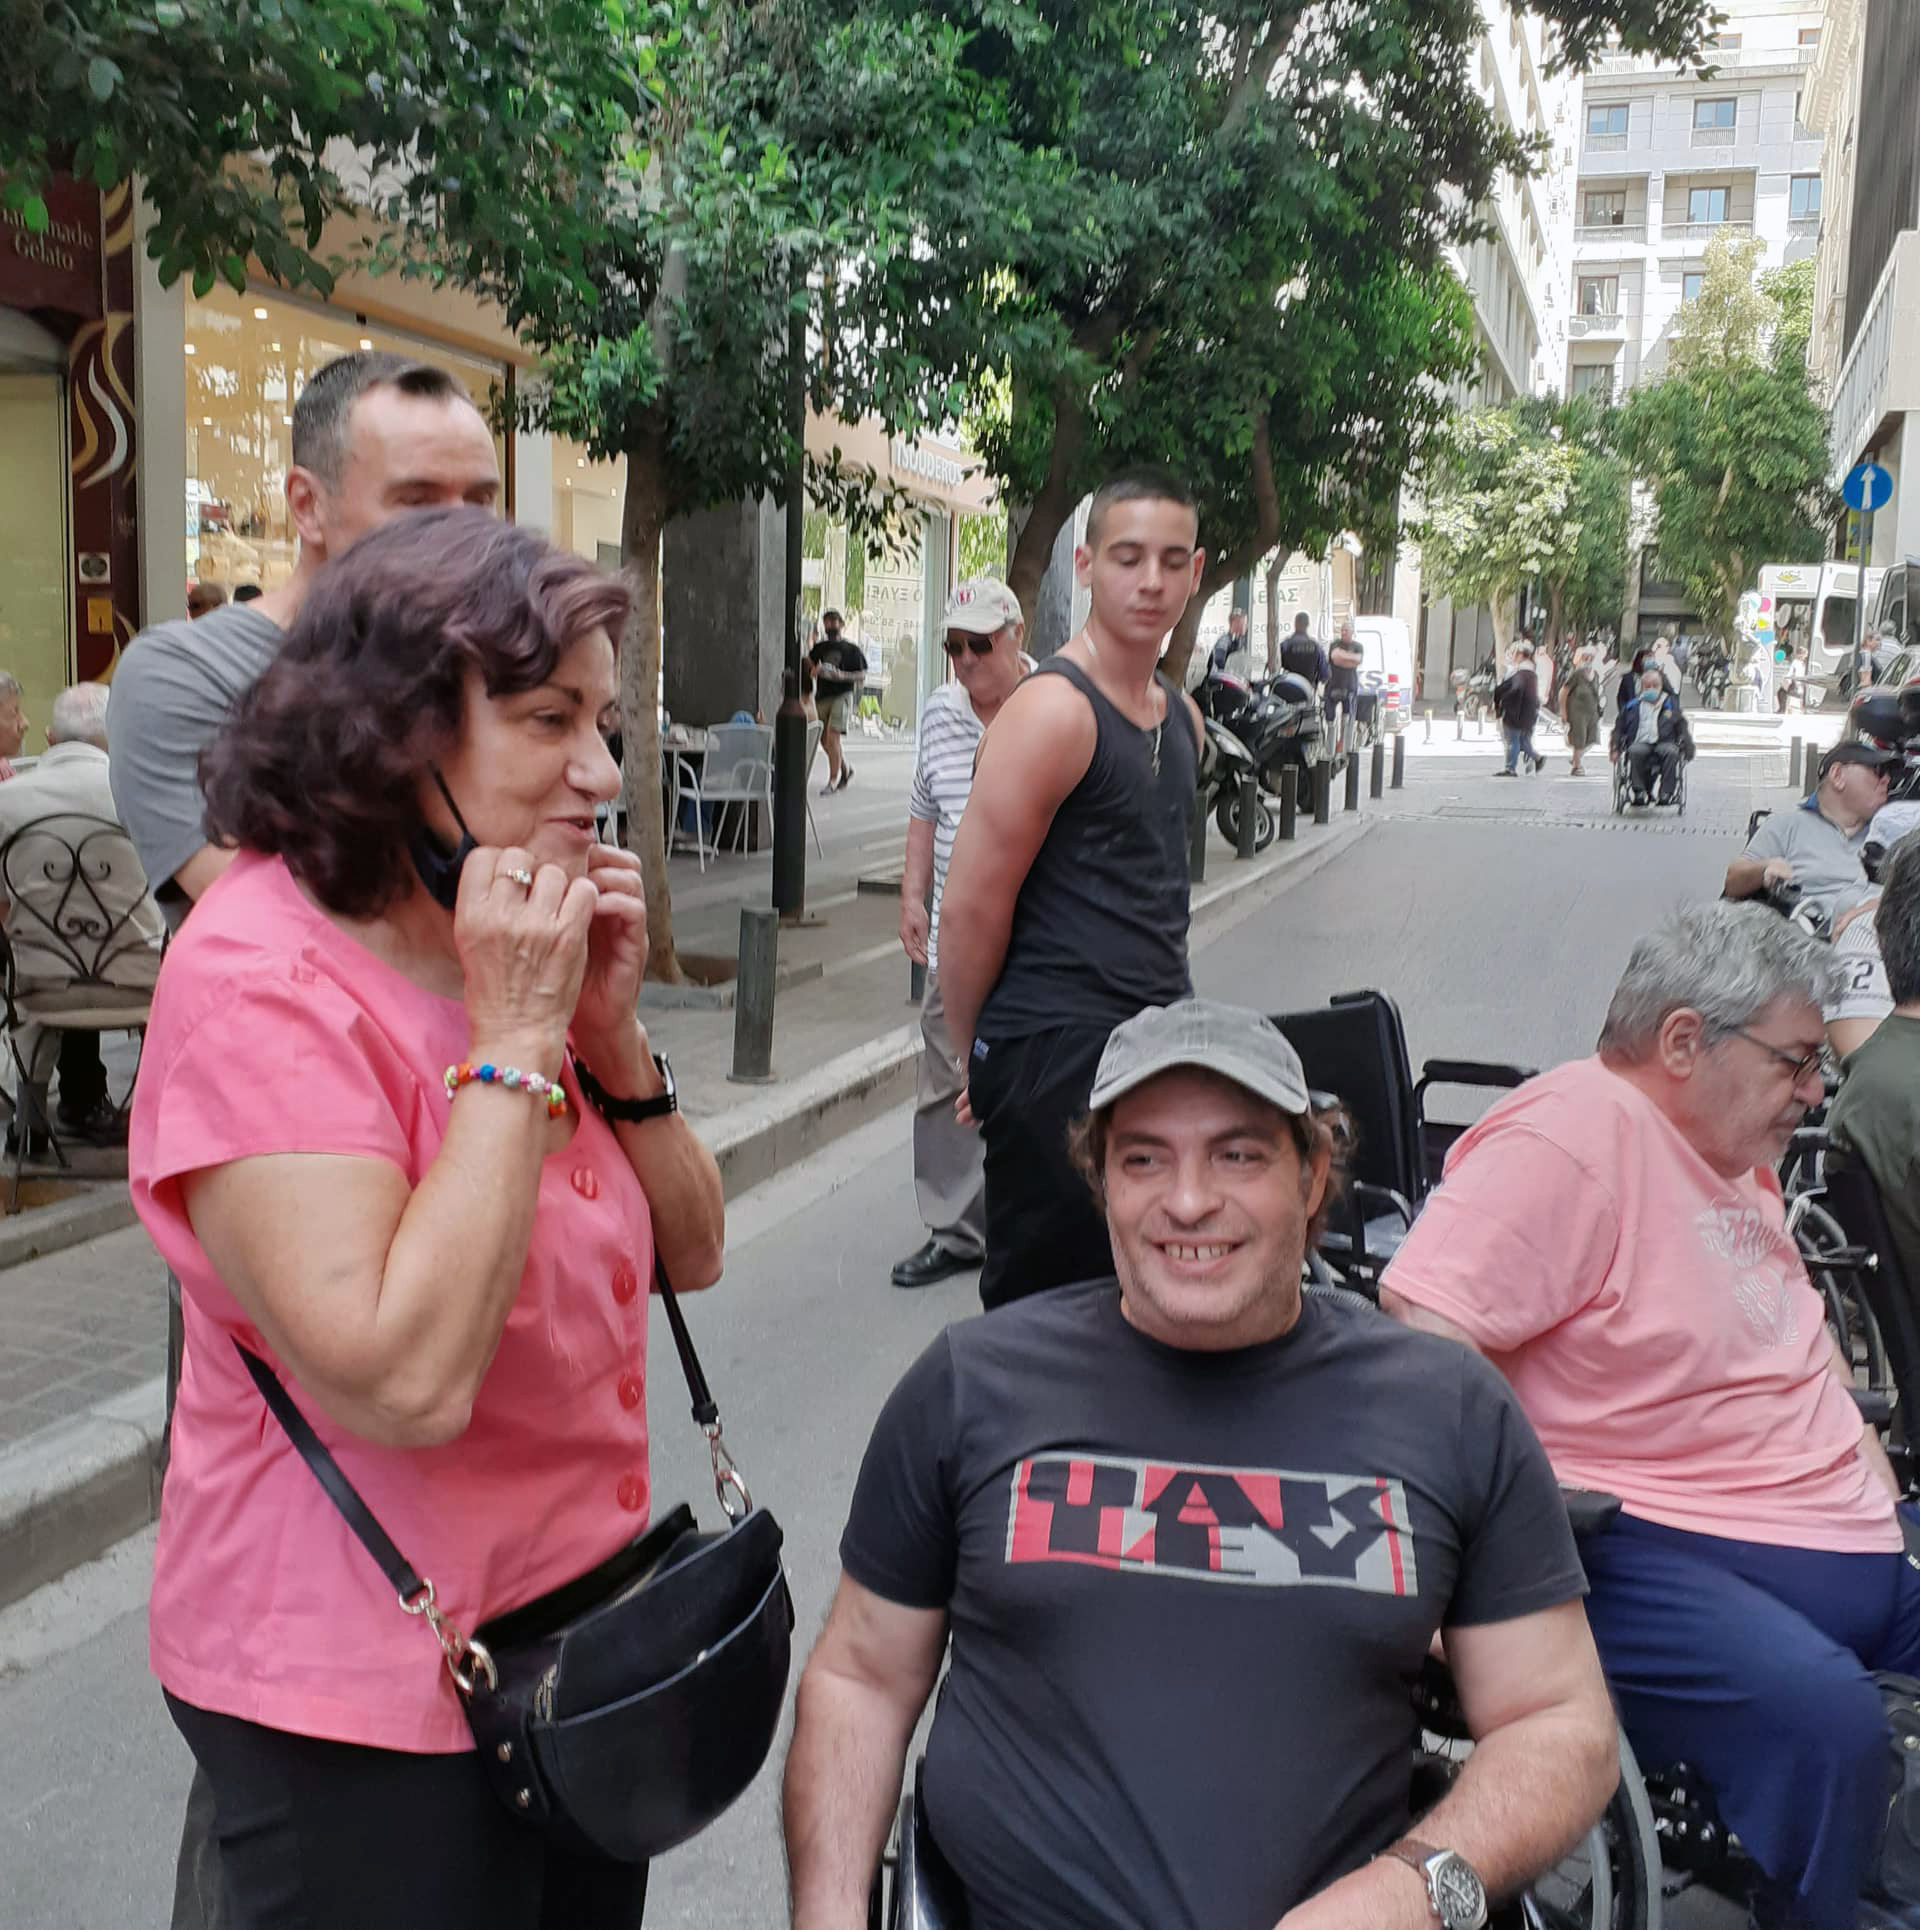 Δήλωση Θ. Φωτίου για τη συγκέντρωση διαμαρτυρίας συλλογικοτήτων ατόμων με αναπηρία στο Υπουργείο Οικονομικών